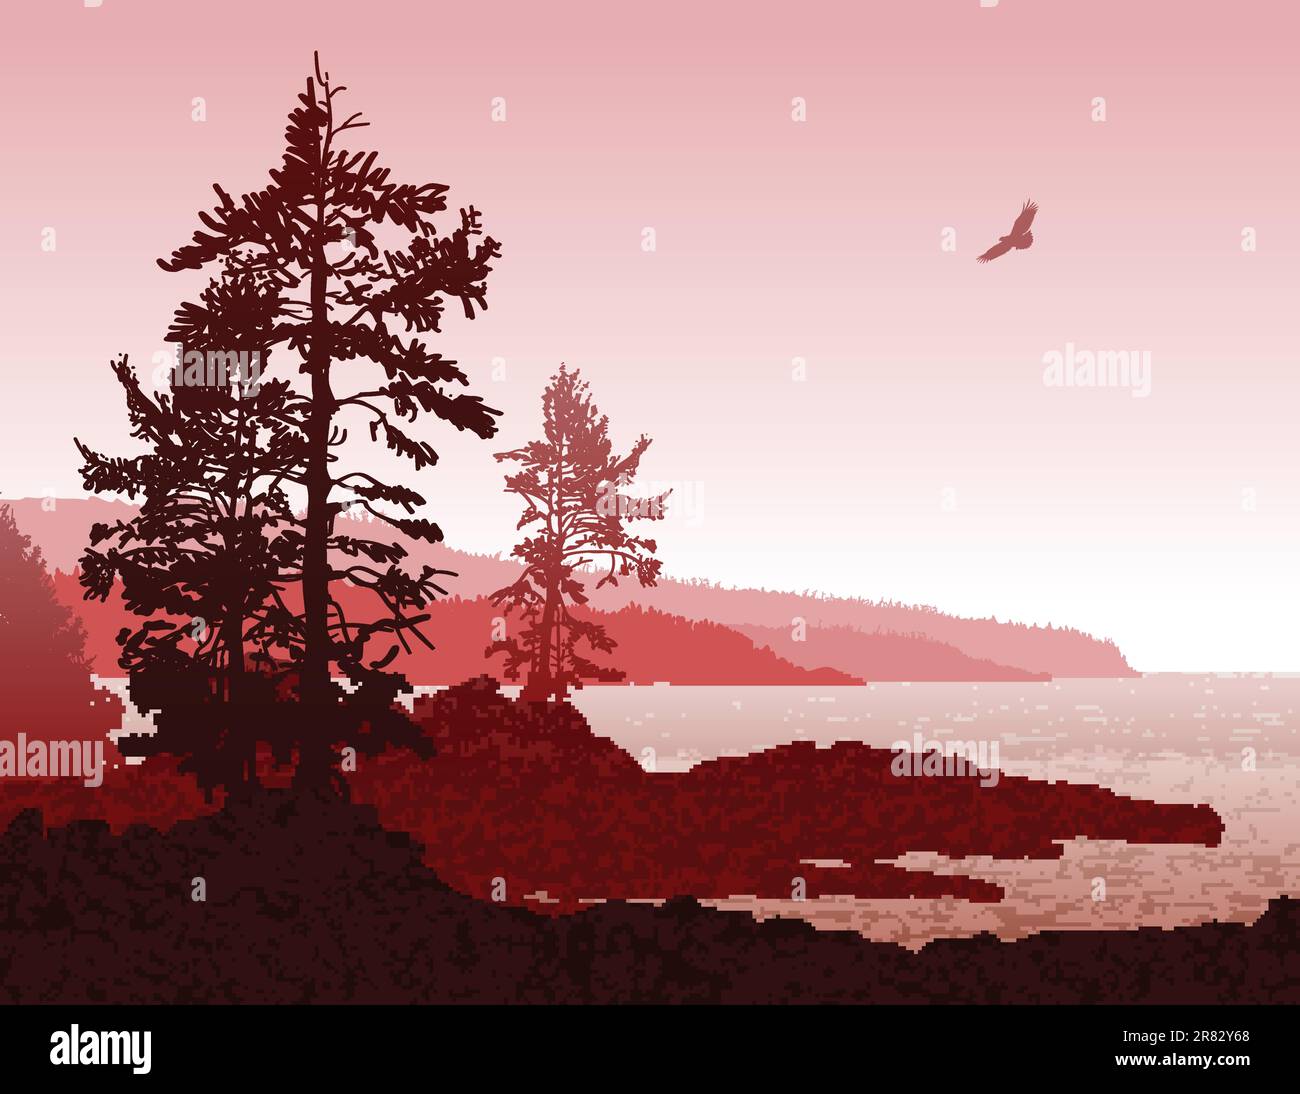 Illustrazione suggestiva dell'aspra costa occidentale dell'isola di Vancouver Illustrazione Vettoriale